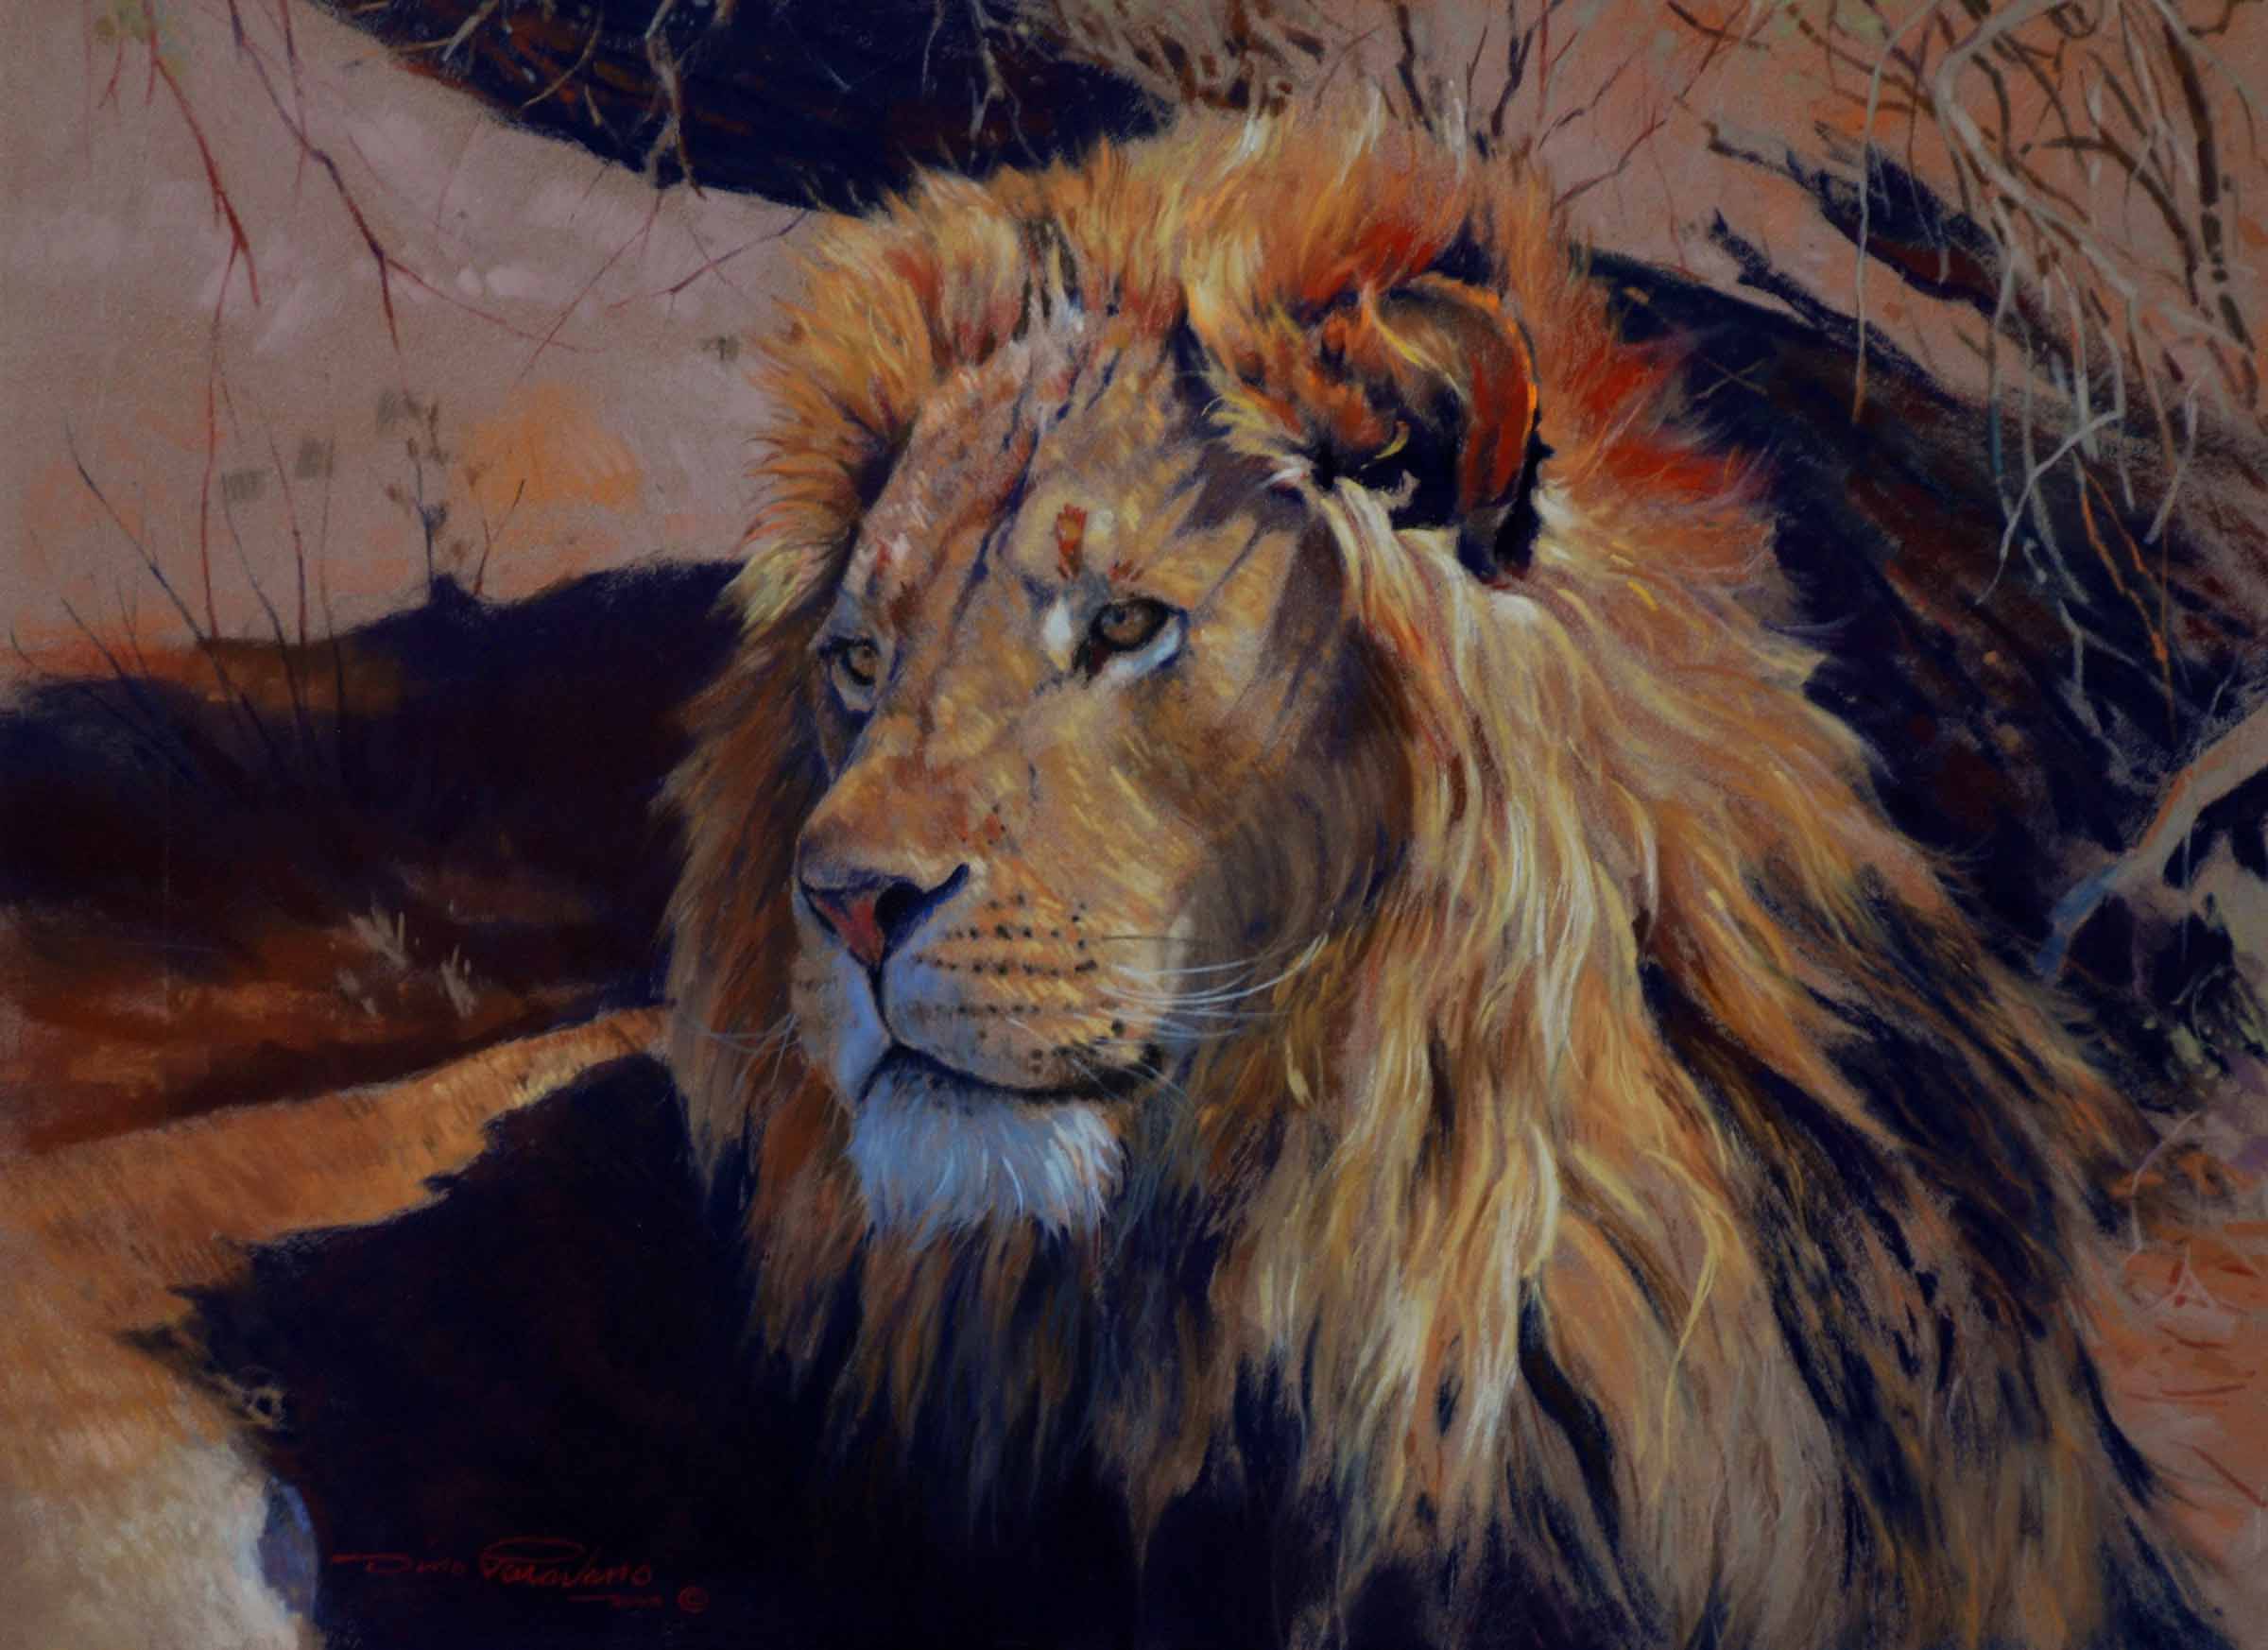 DP2 – Kalahari Lion © Dino Paravano